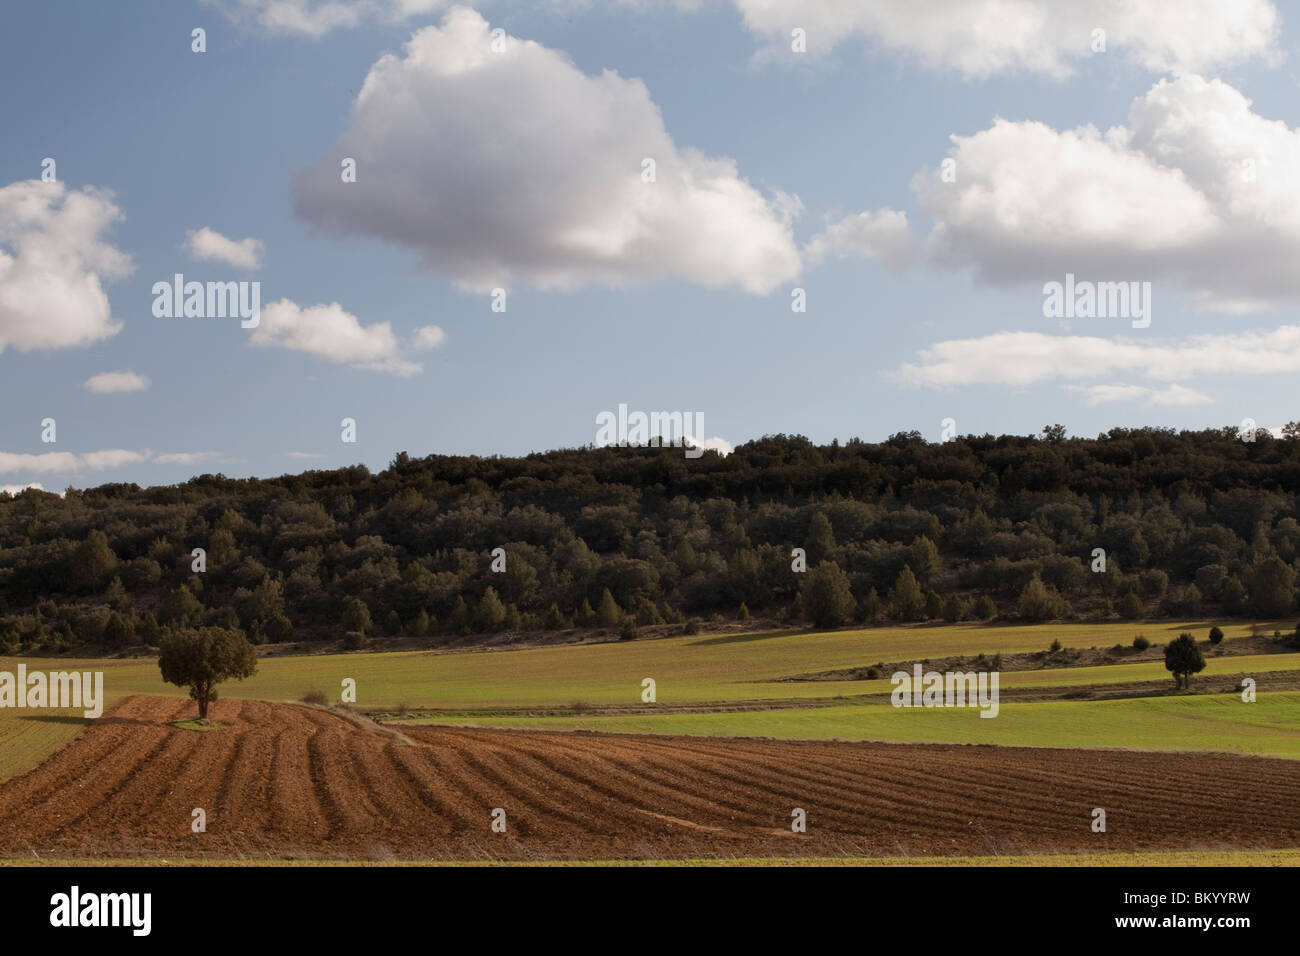 Crop land close to Calatañazor, Soria, Spain / Cultivos alrededor de Calatañazor, Soria, España Stock Photo